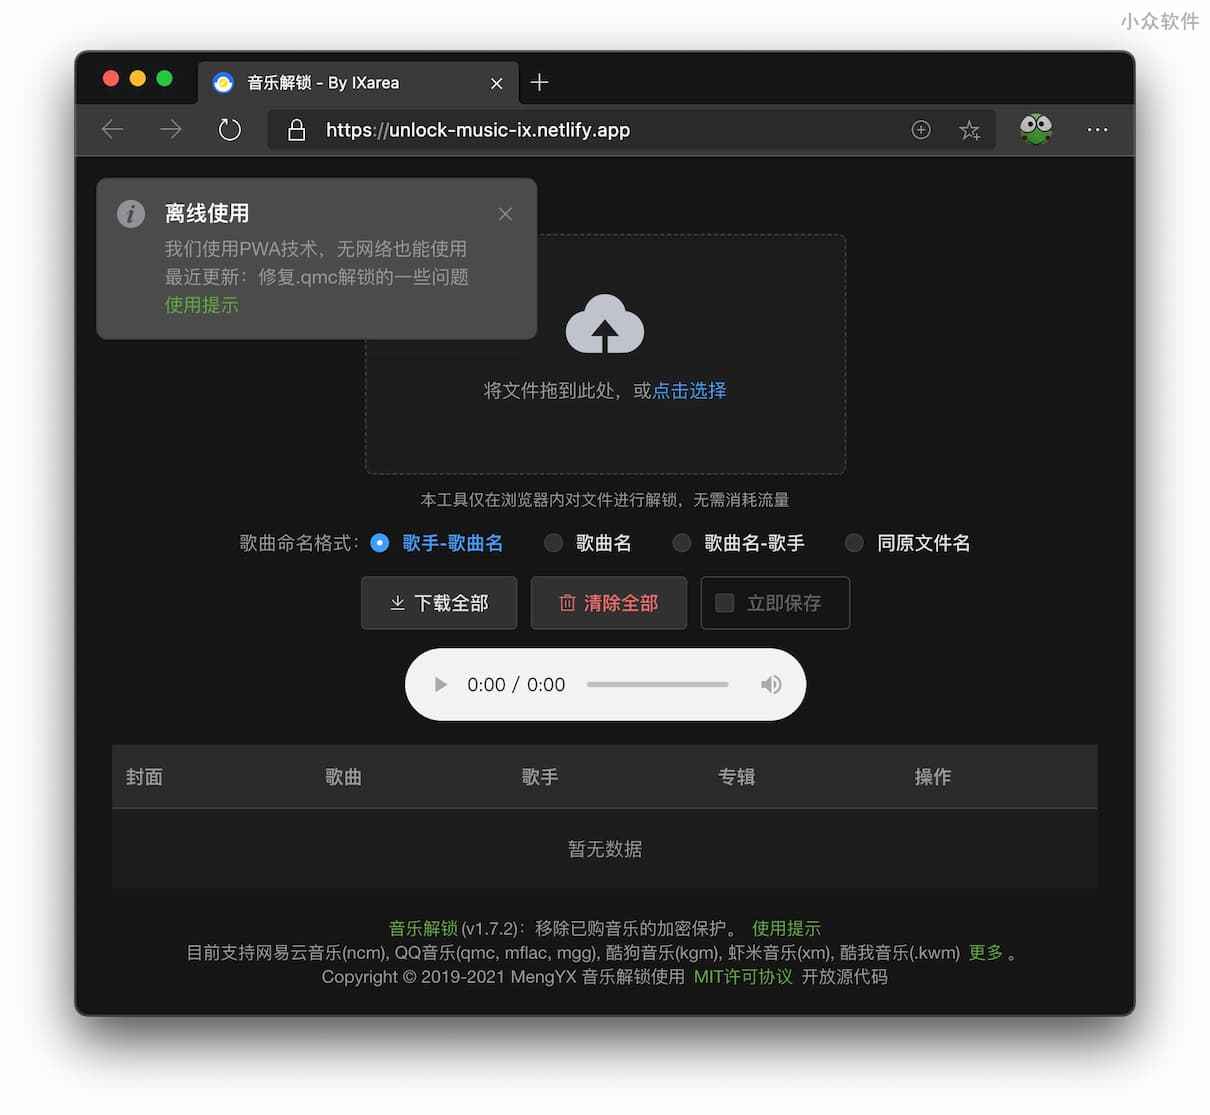 Unlock Music 音乐解锁 - 解锁虾米音乐 .xm 格式，还支持 QQ 音乐、网易云音乐、酷狗/酷我音乐特殊格式解锁 2